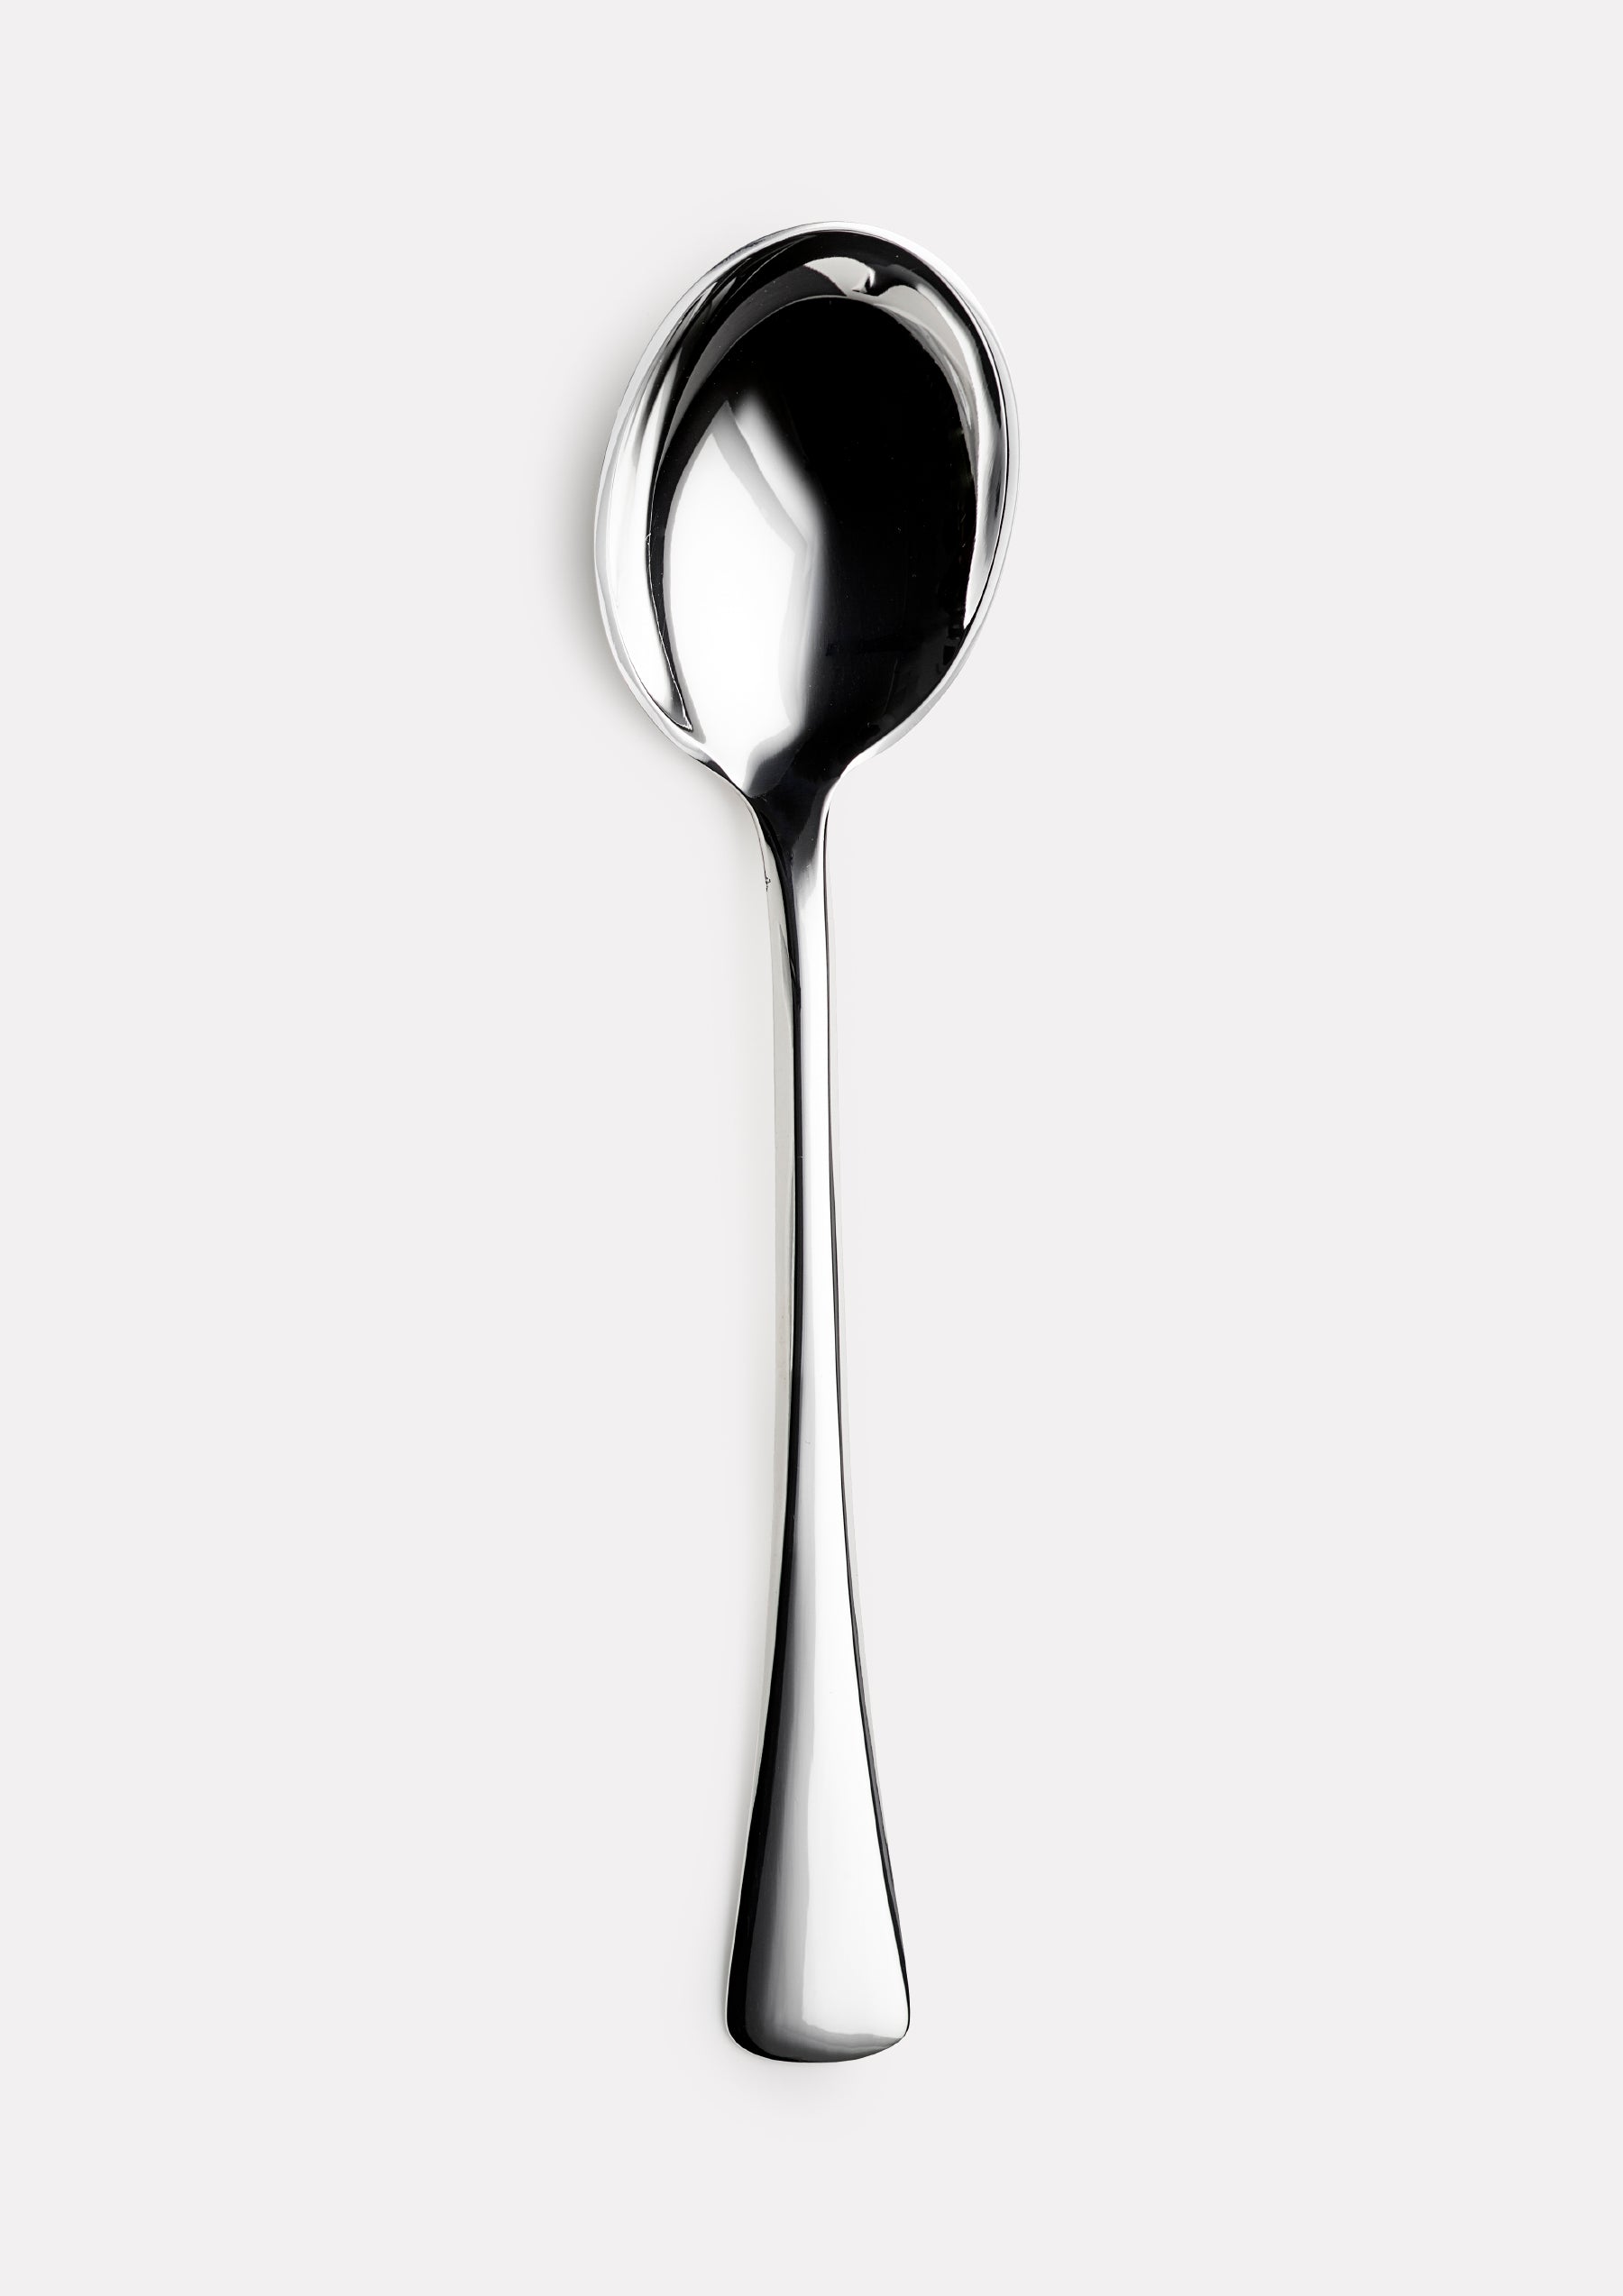 Paris serving spoon